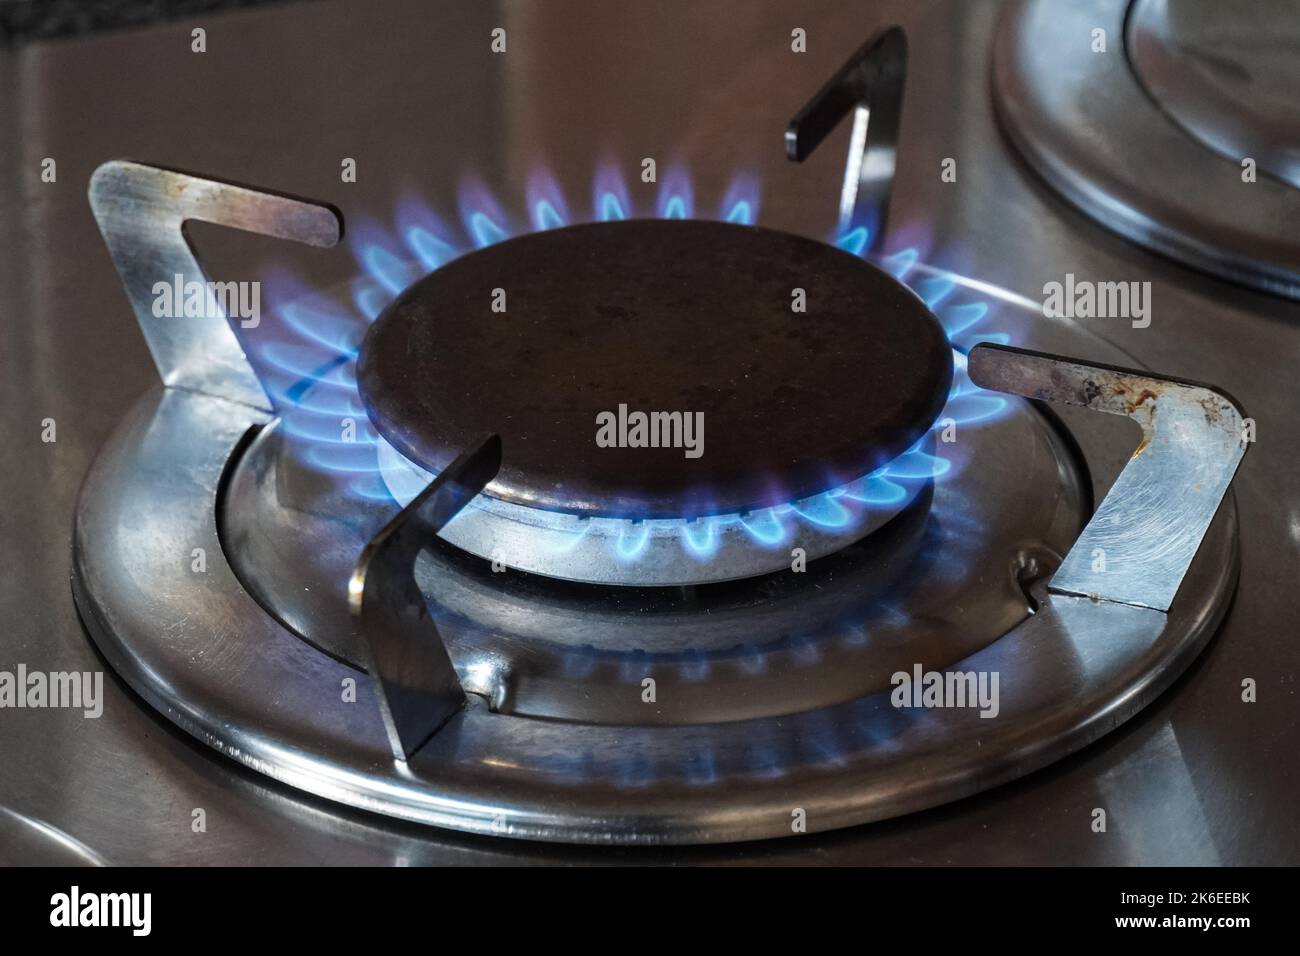 Una imagen bien enfocada que captura las intensas llamas azules de un  quemador de estufa de gas propano en una cocina hogareña